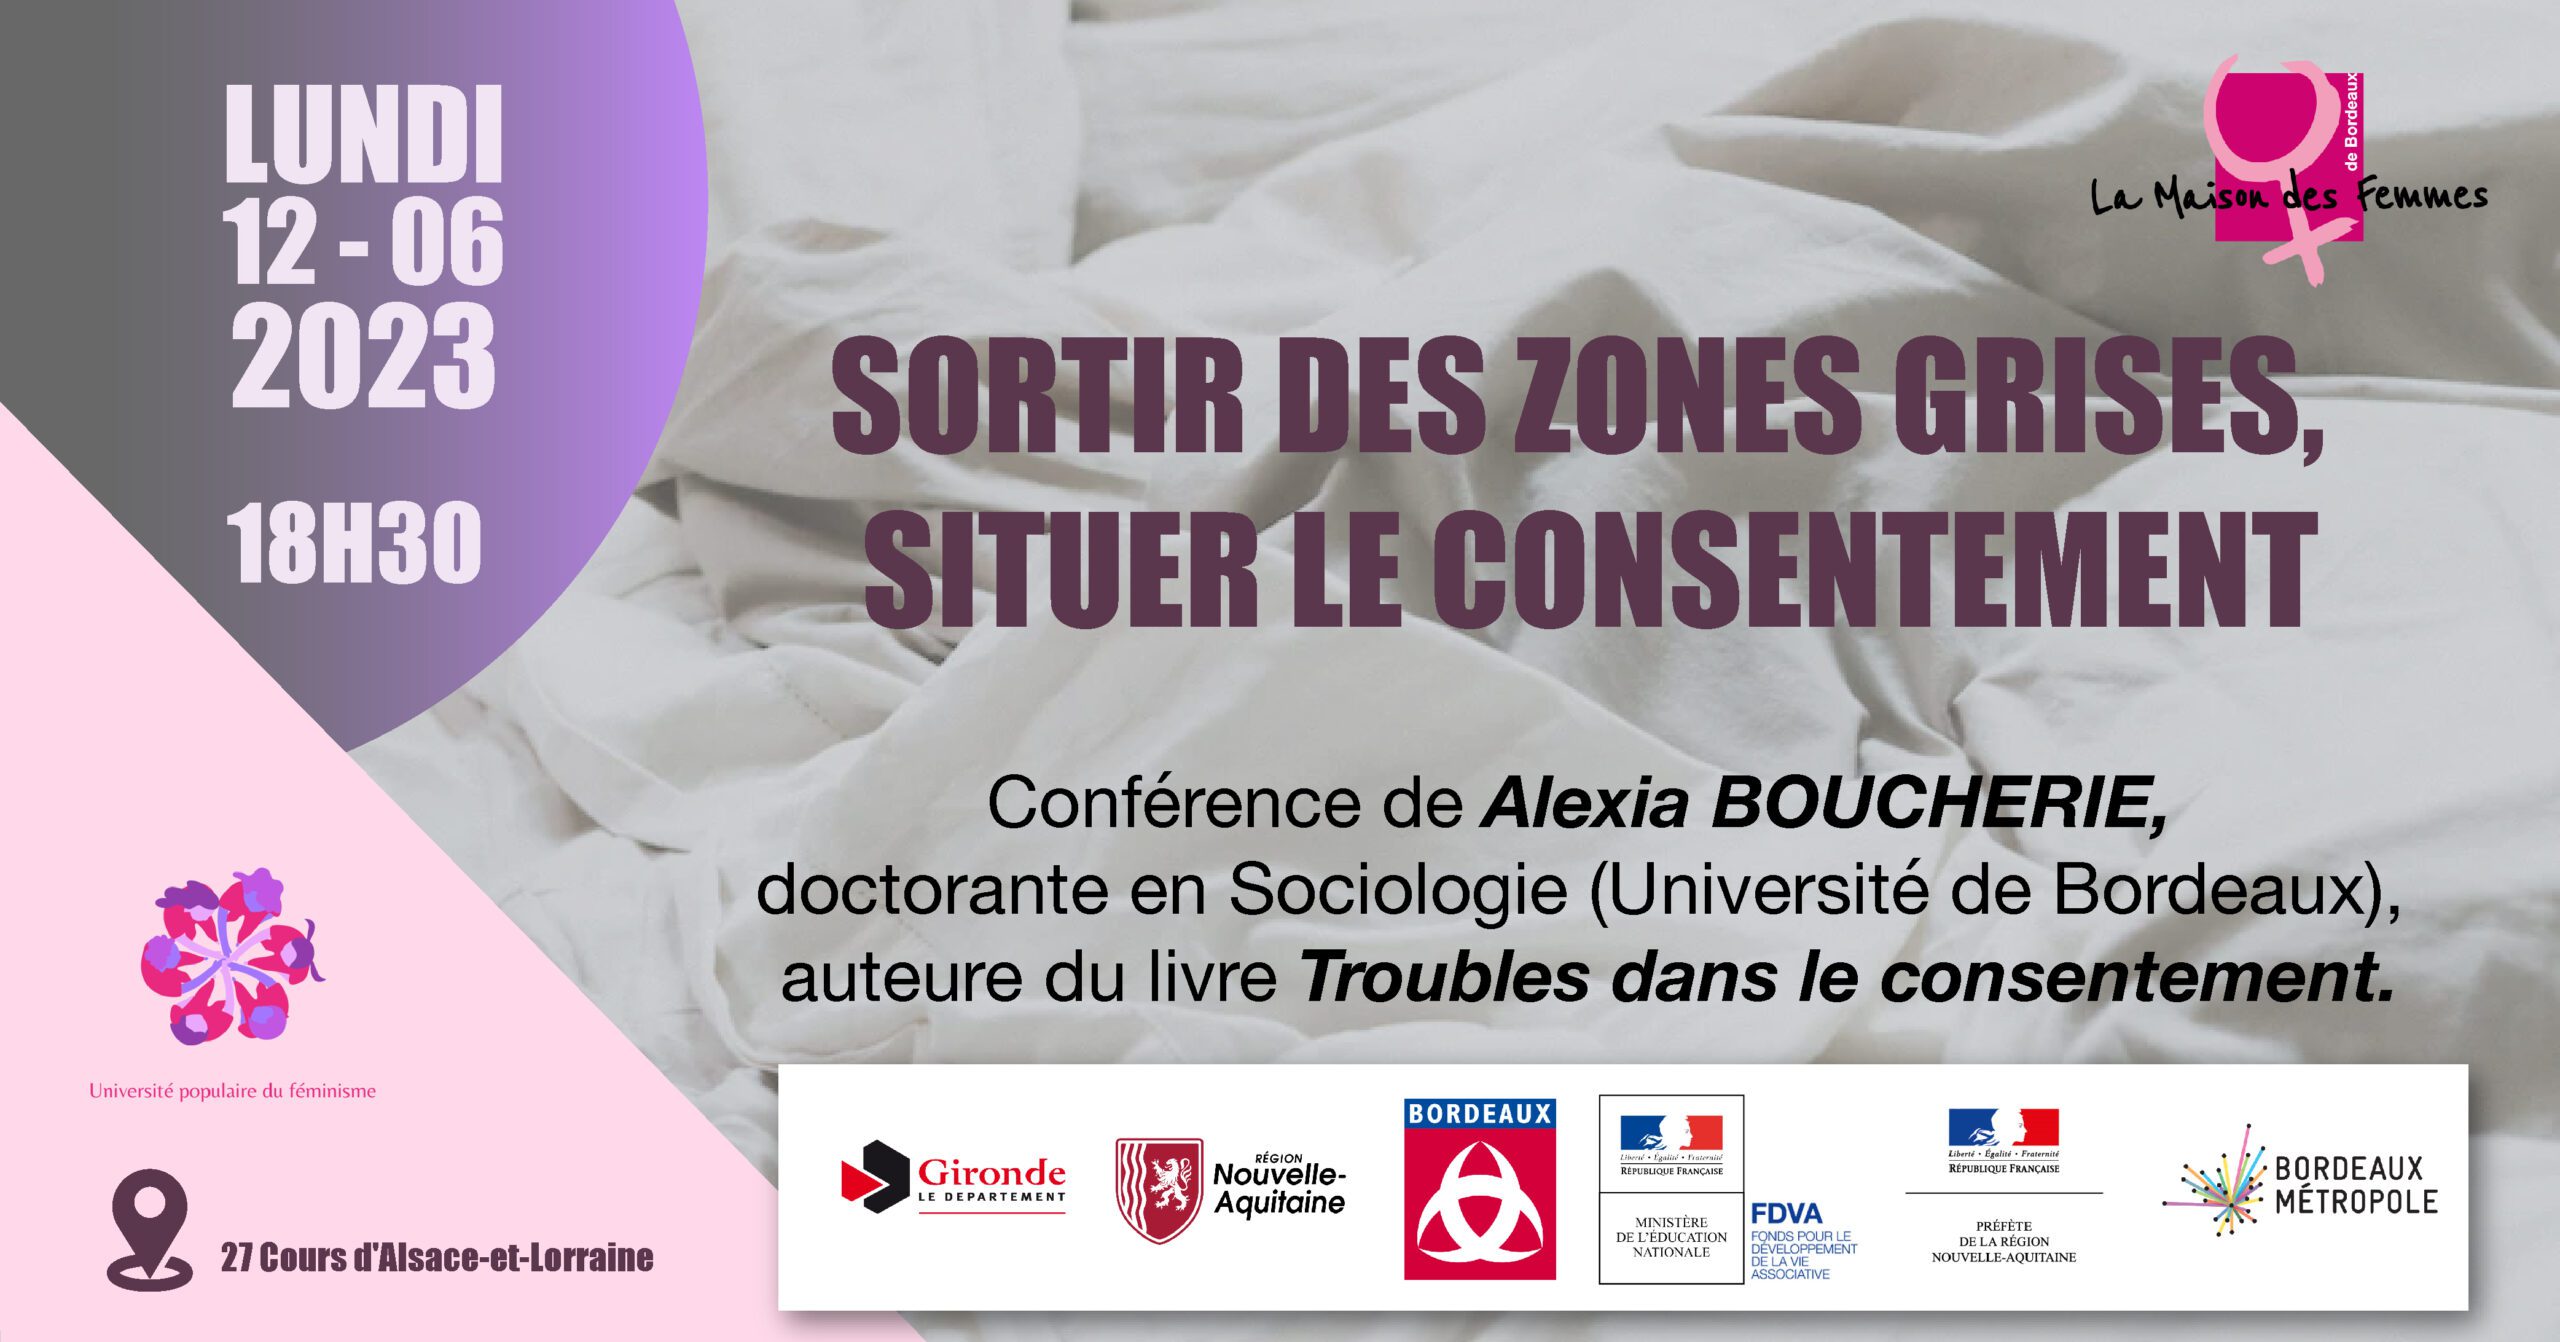 « Sortir des zones grises, situer le consentement », conférence de Alexia Boucherie